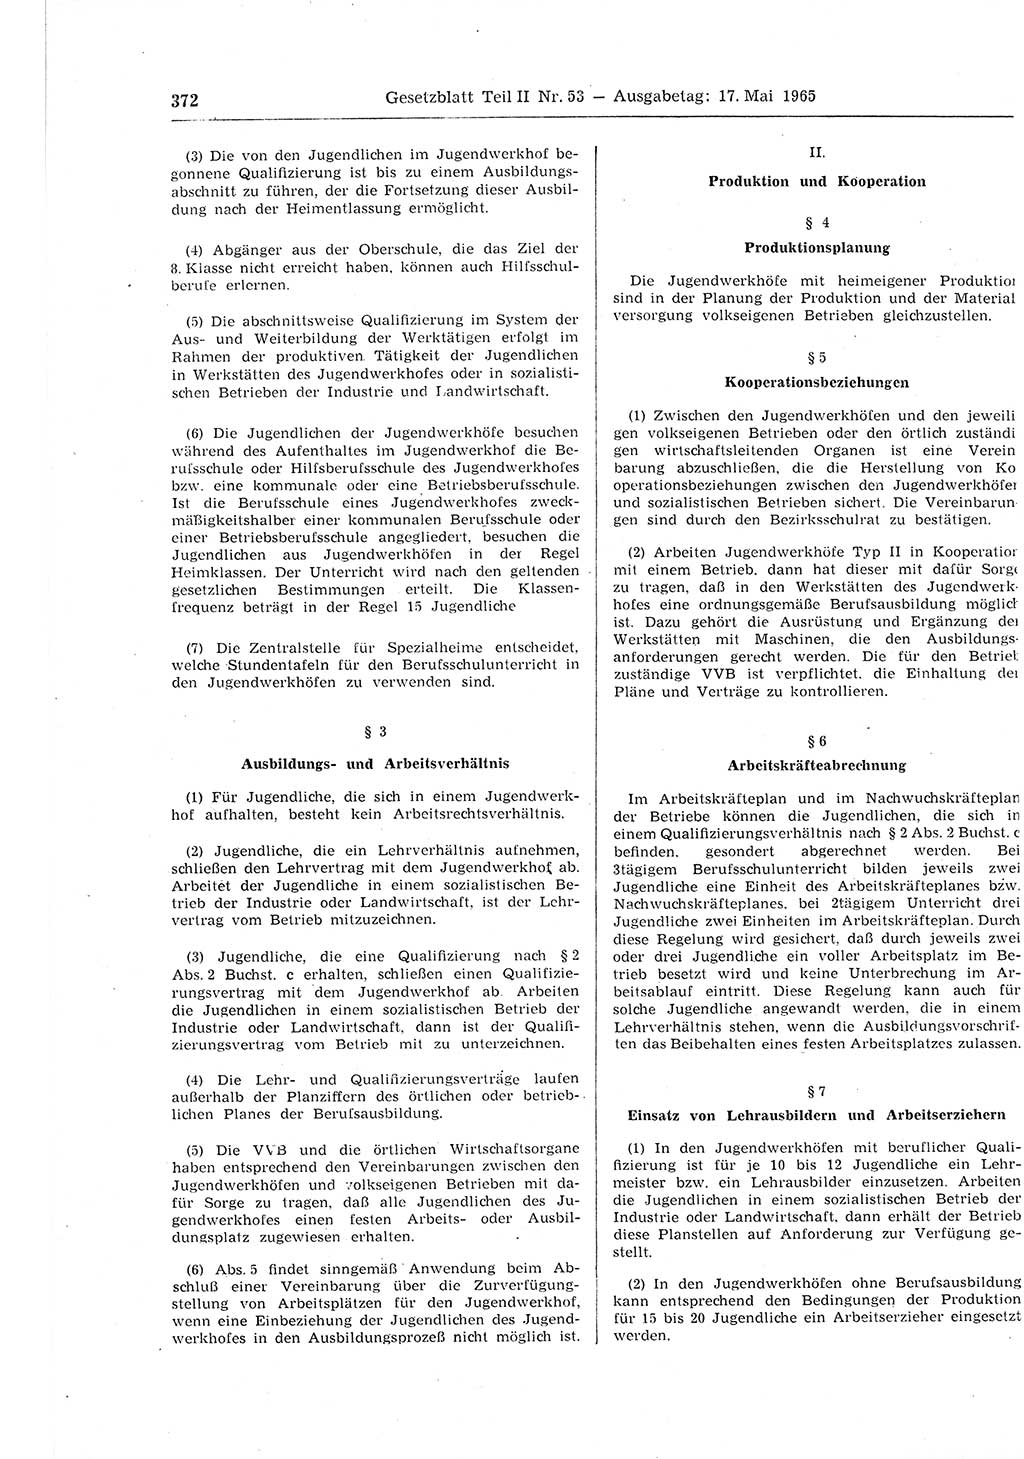 Gesetzblatt (GBl.) der Deutschen Demokratischen Republik (DDR) Teil ⅠⅠ 1965, Seite 372 (GBl. DDR ⅠⅠ 1965, S. 372)